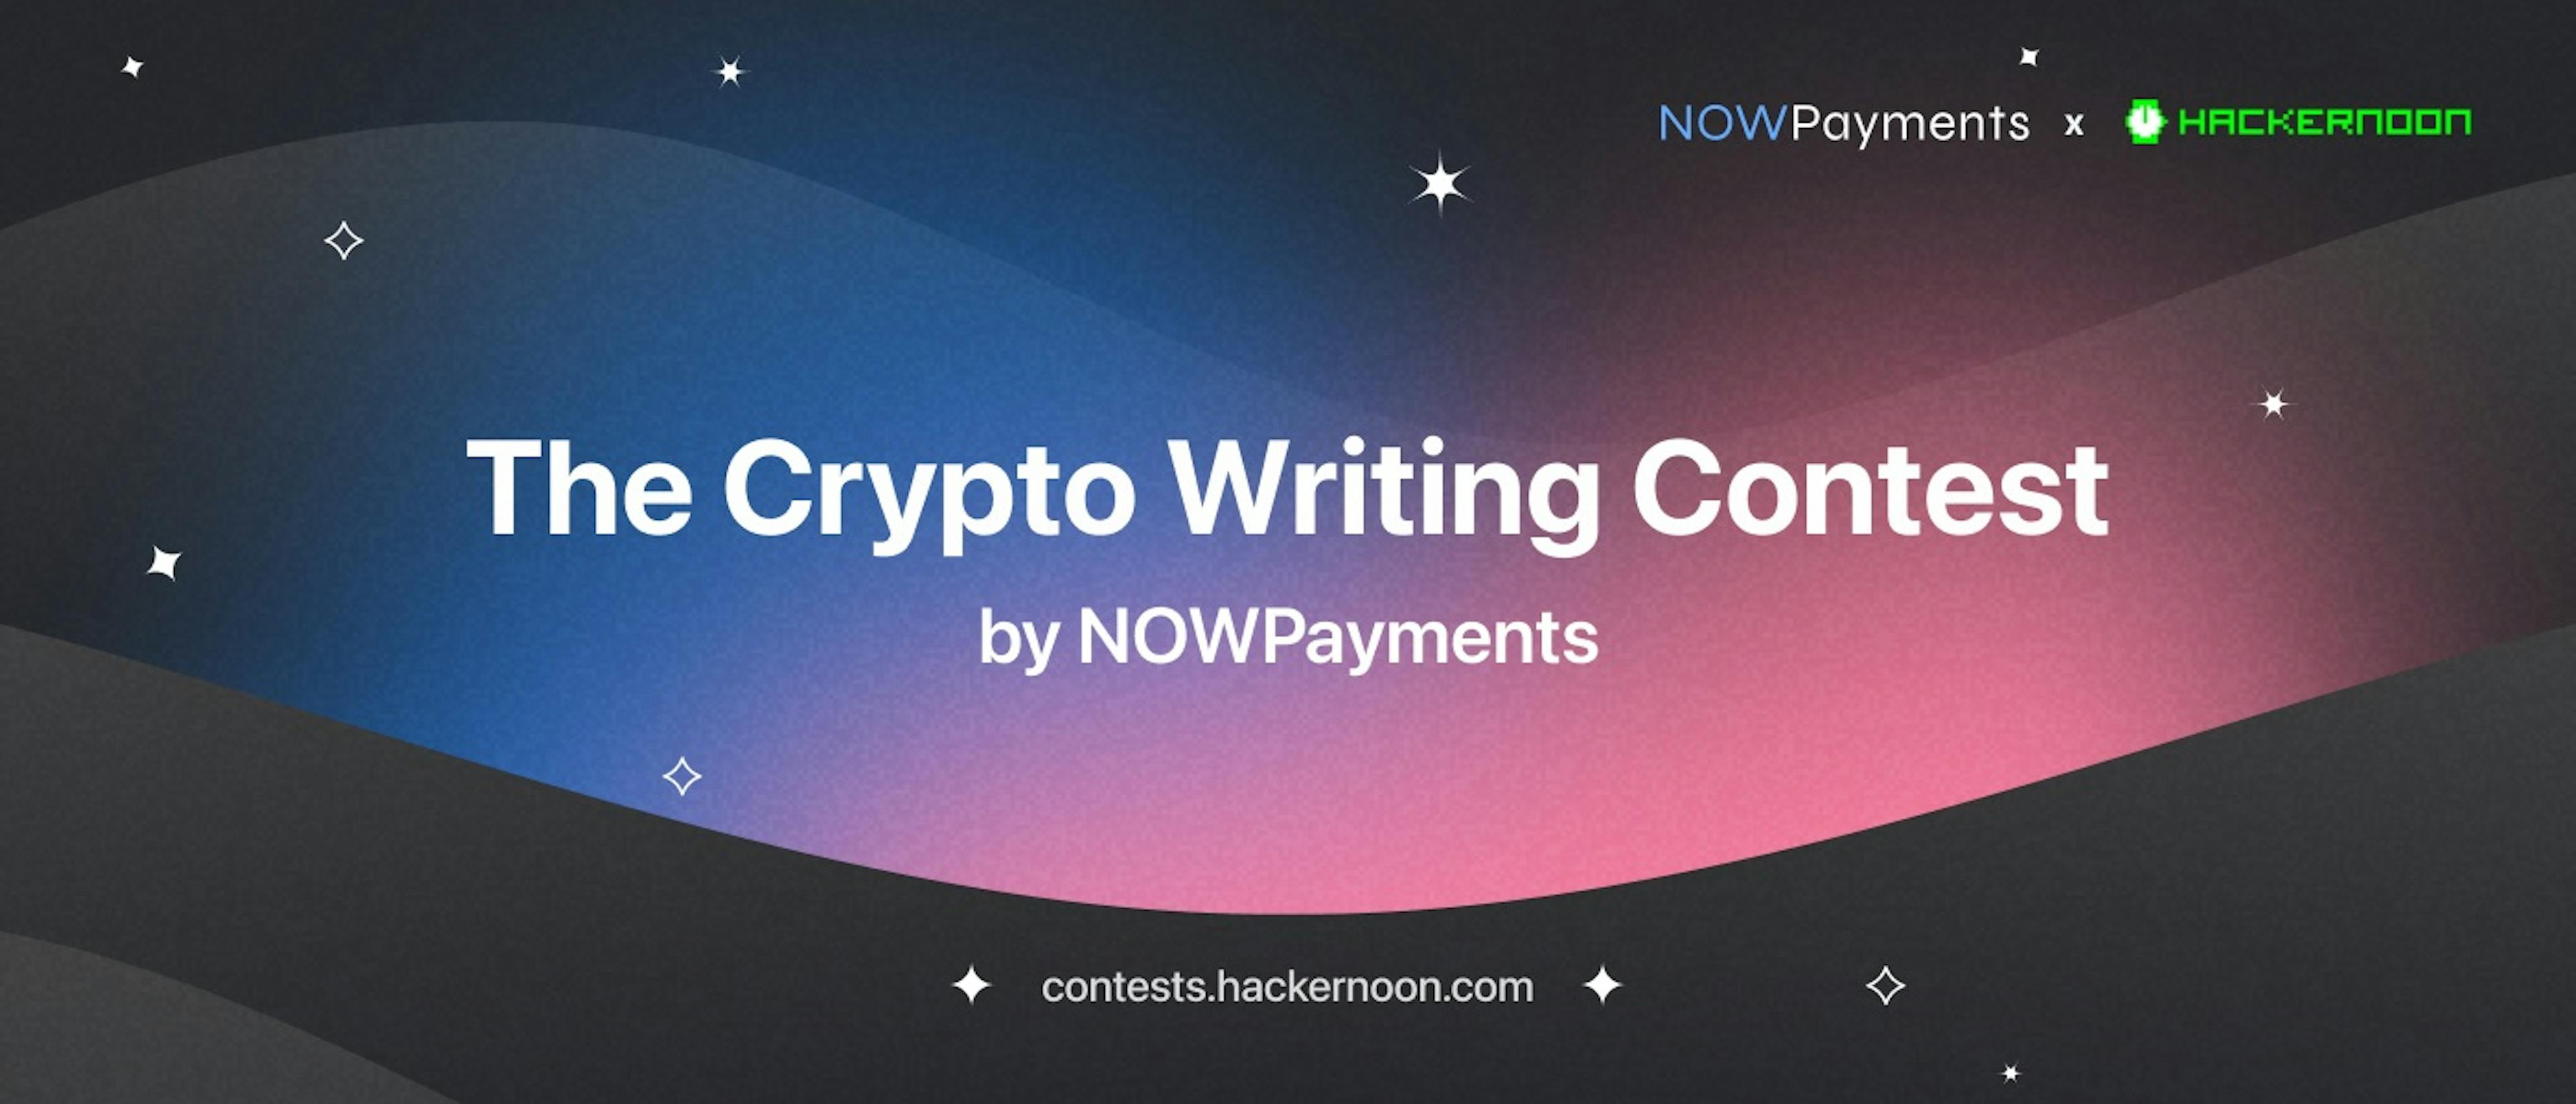 featured image - Der Krypto-Schreibwettbewerb von NOWPayments und HackerNoon